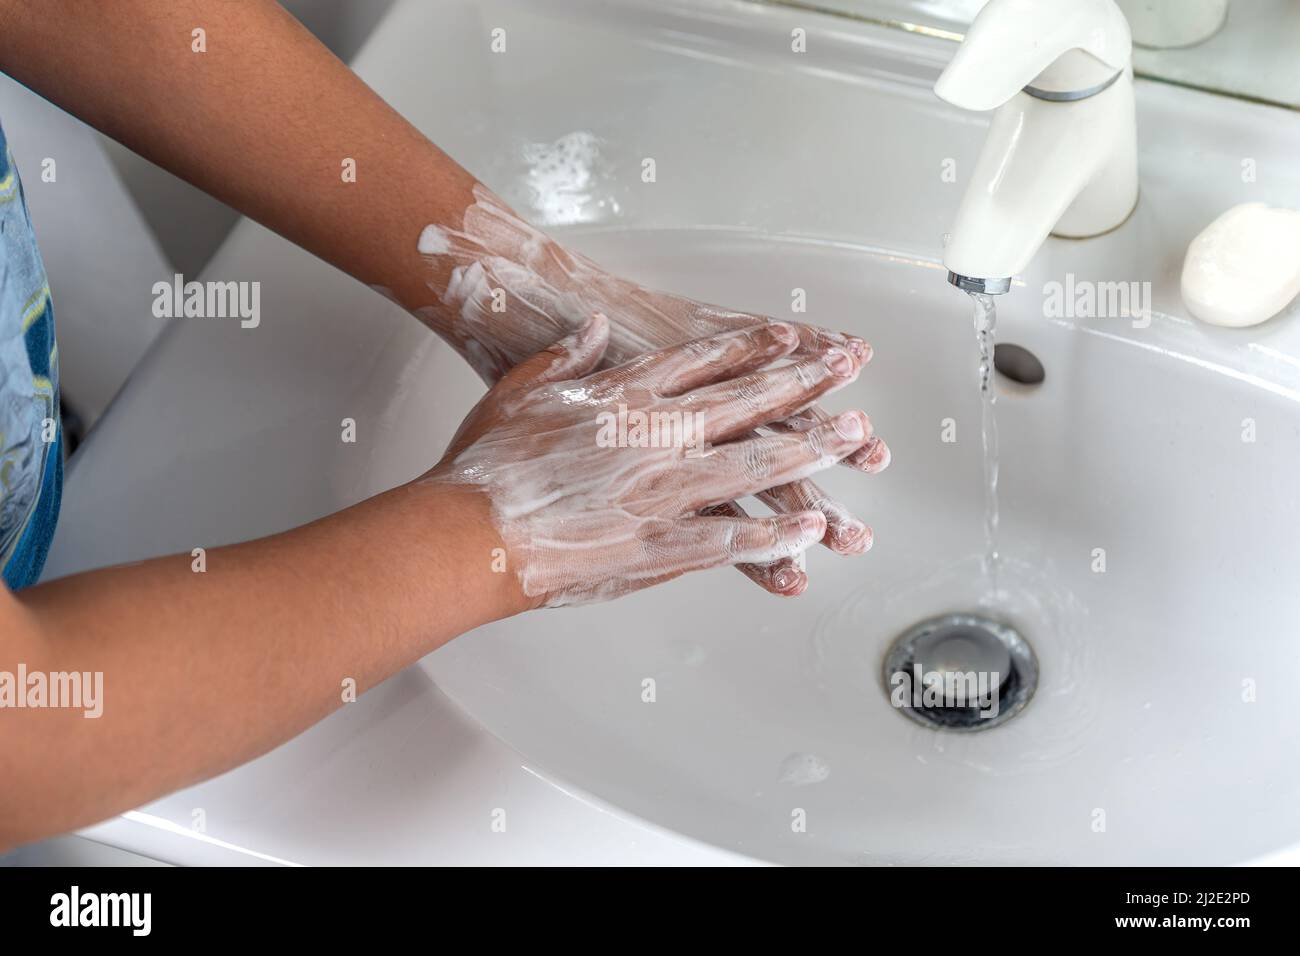 Femme se lavant la main avec de la mousse de savon et de l'eau du robinet dans la salle de bains. Nettoyer la main sous le robinet de l'évier pour l'hygiène personnelle afin de prévenir la grippe et le coronavirus. Bonne procédure de lavage des mains pour tuer les bactéries, le virus Banque D'Images